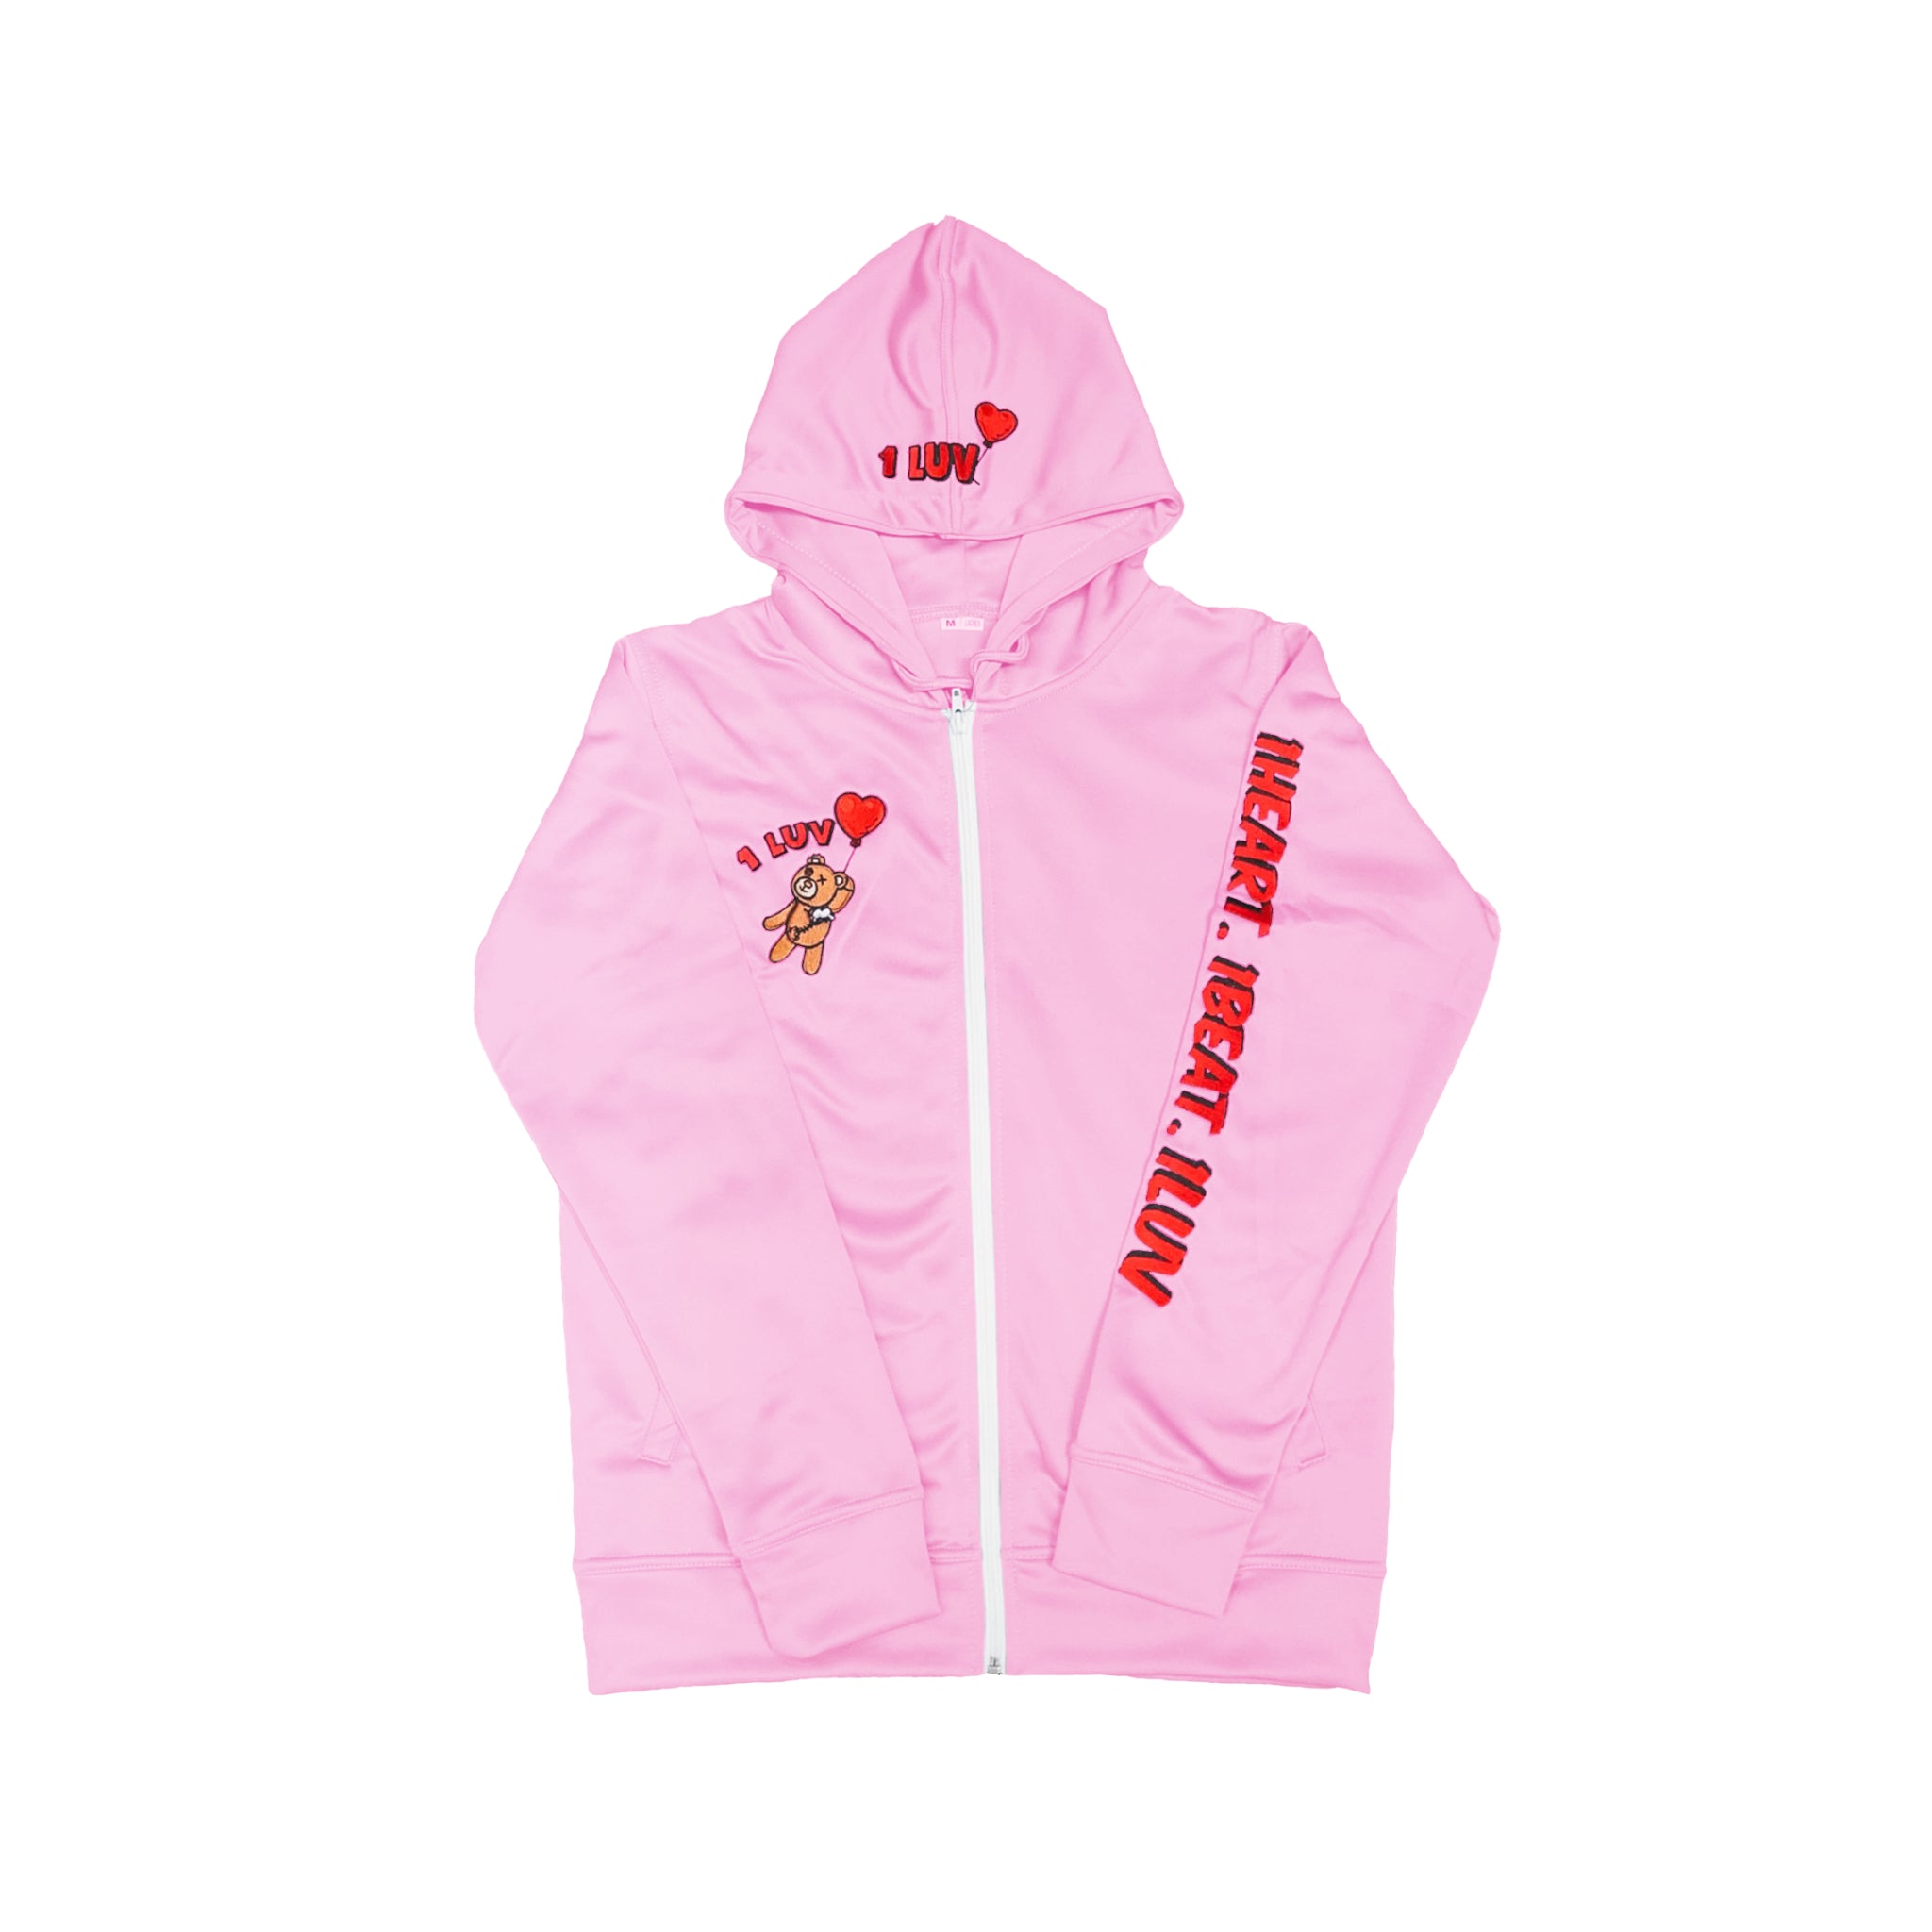 1Luv "Pink" Sweatsuit (Hoodie)